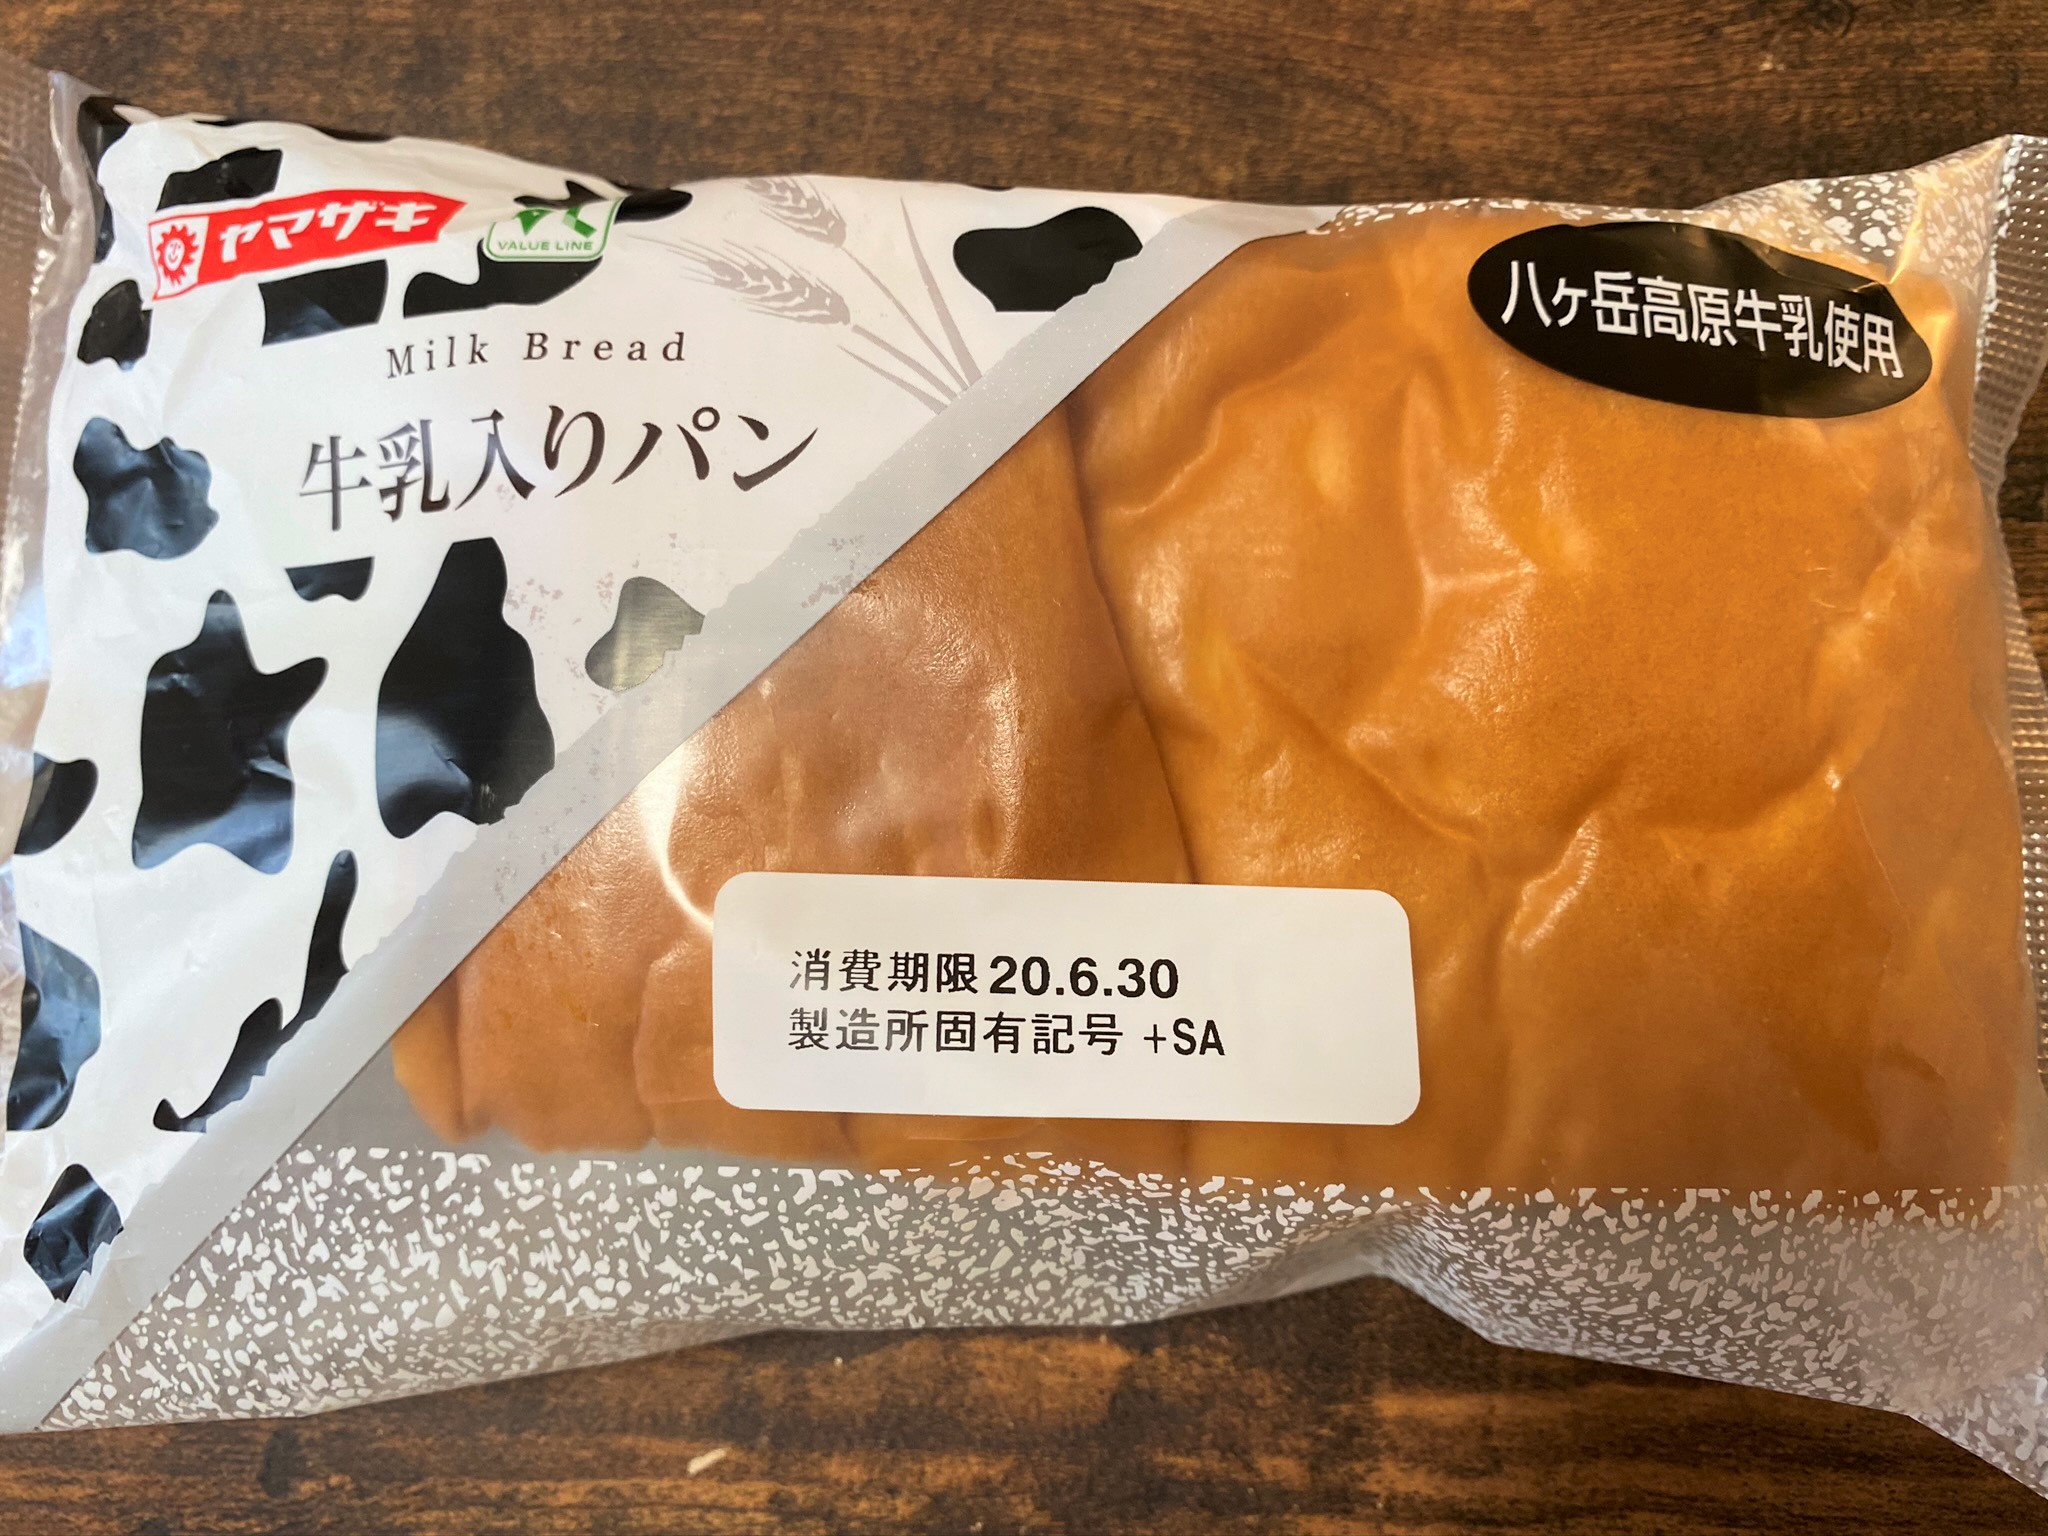 ヤマザキ 100円lawson購入 牛乳入りパンを食べてみた感想 発酵ライフ